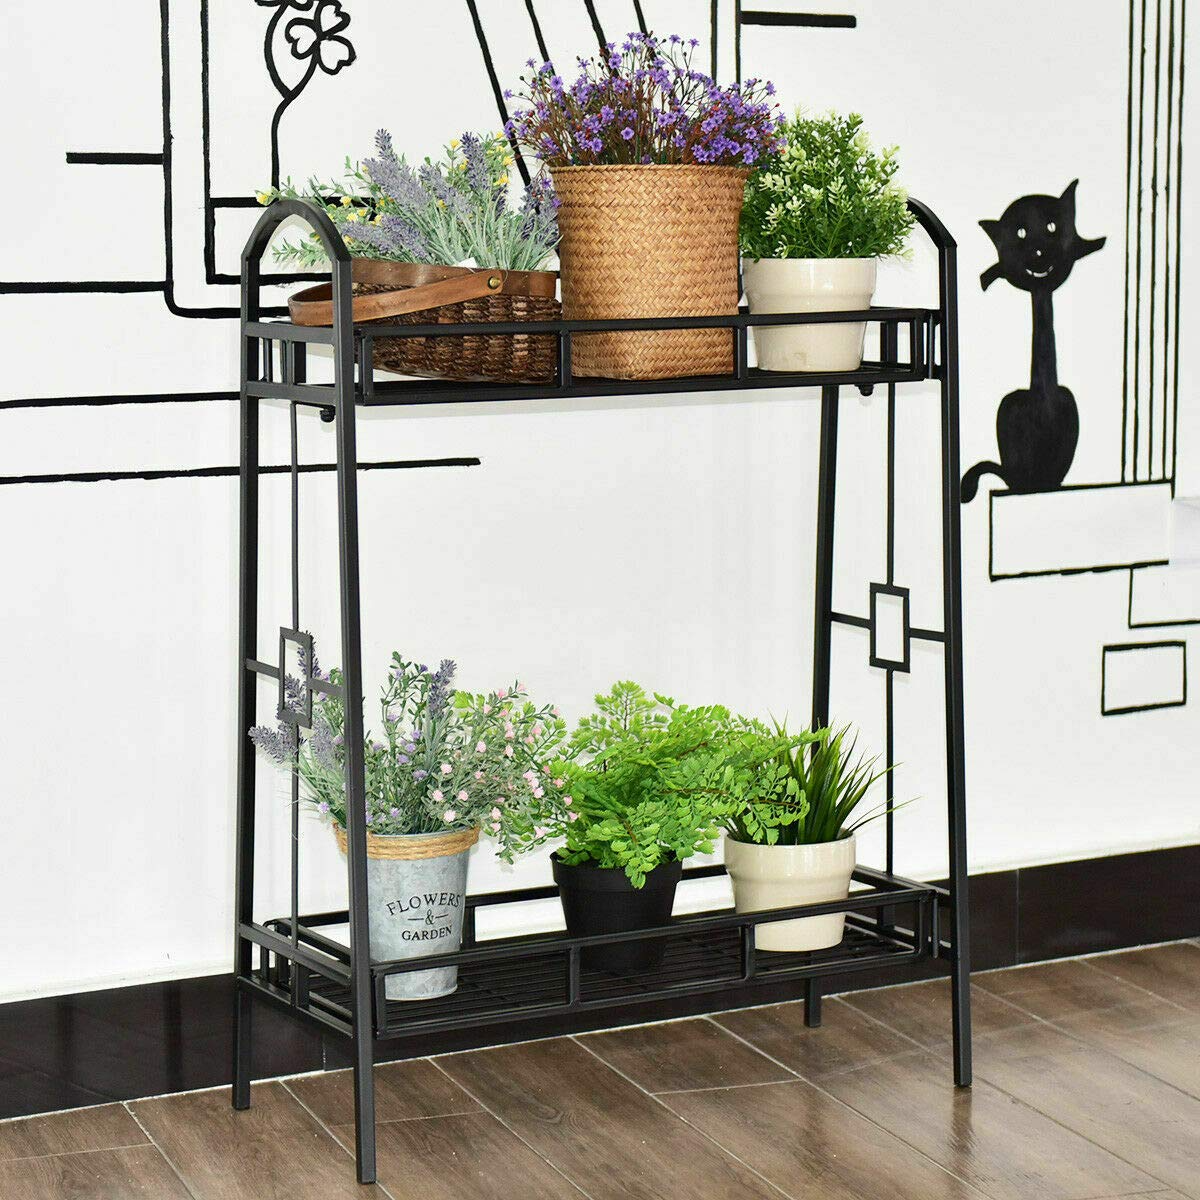 Giantex 2 Tier Metal Plant Stand, Indoor Outdoor Flower Pots Display Rack Shelf